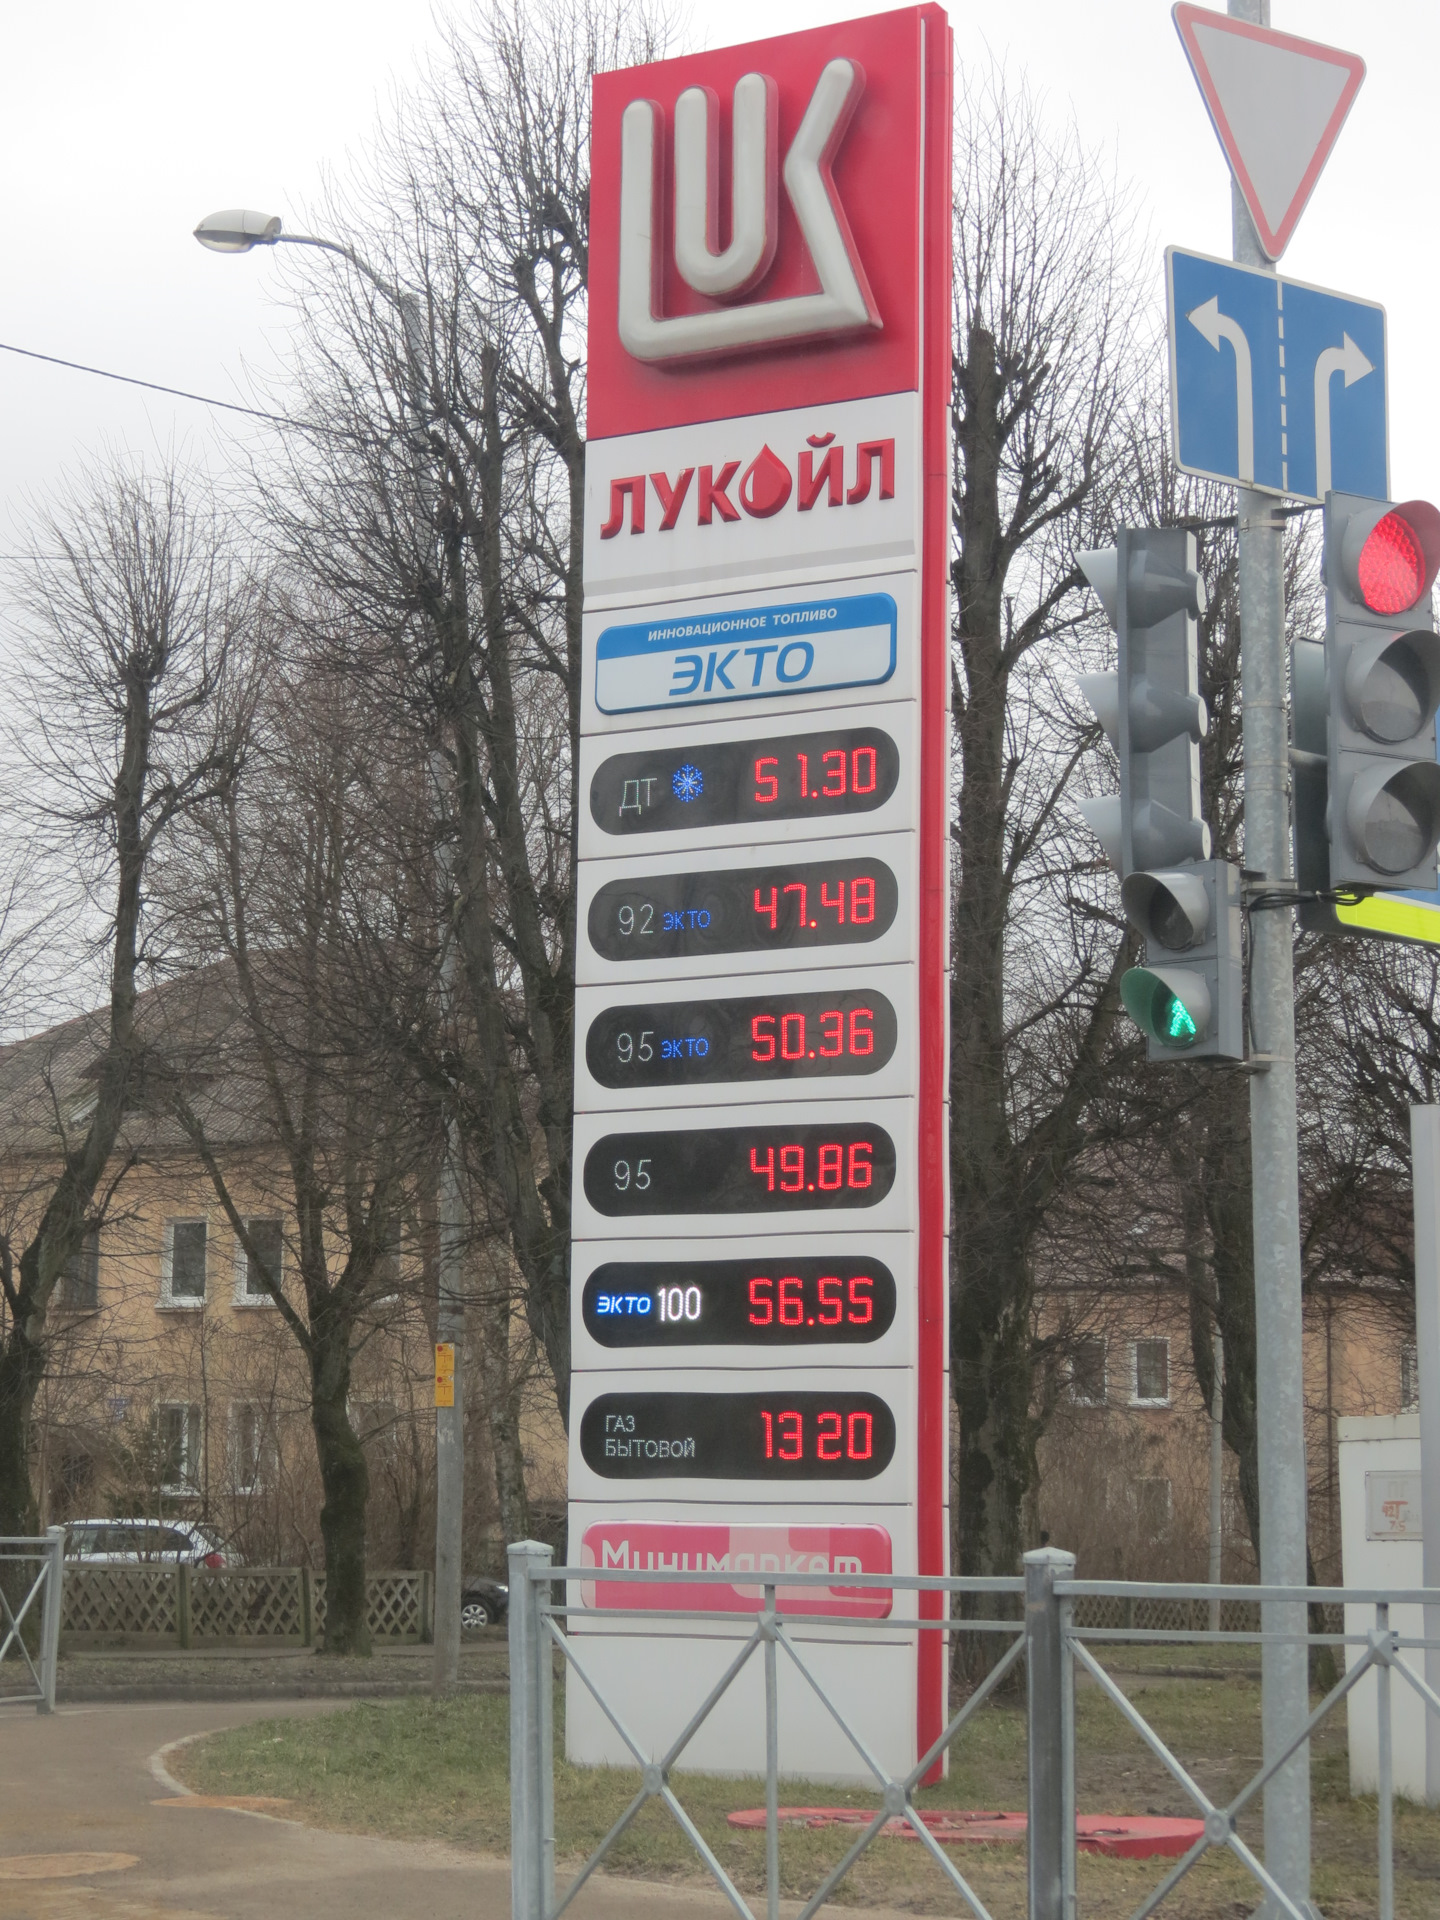 Цена бензина в 95 году. Цены на бензин 2021 год. Бензин 95 цена. Стоимость бензина на 2021 год июнь. Стоимость топлива в Калининграде.